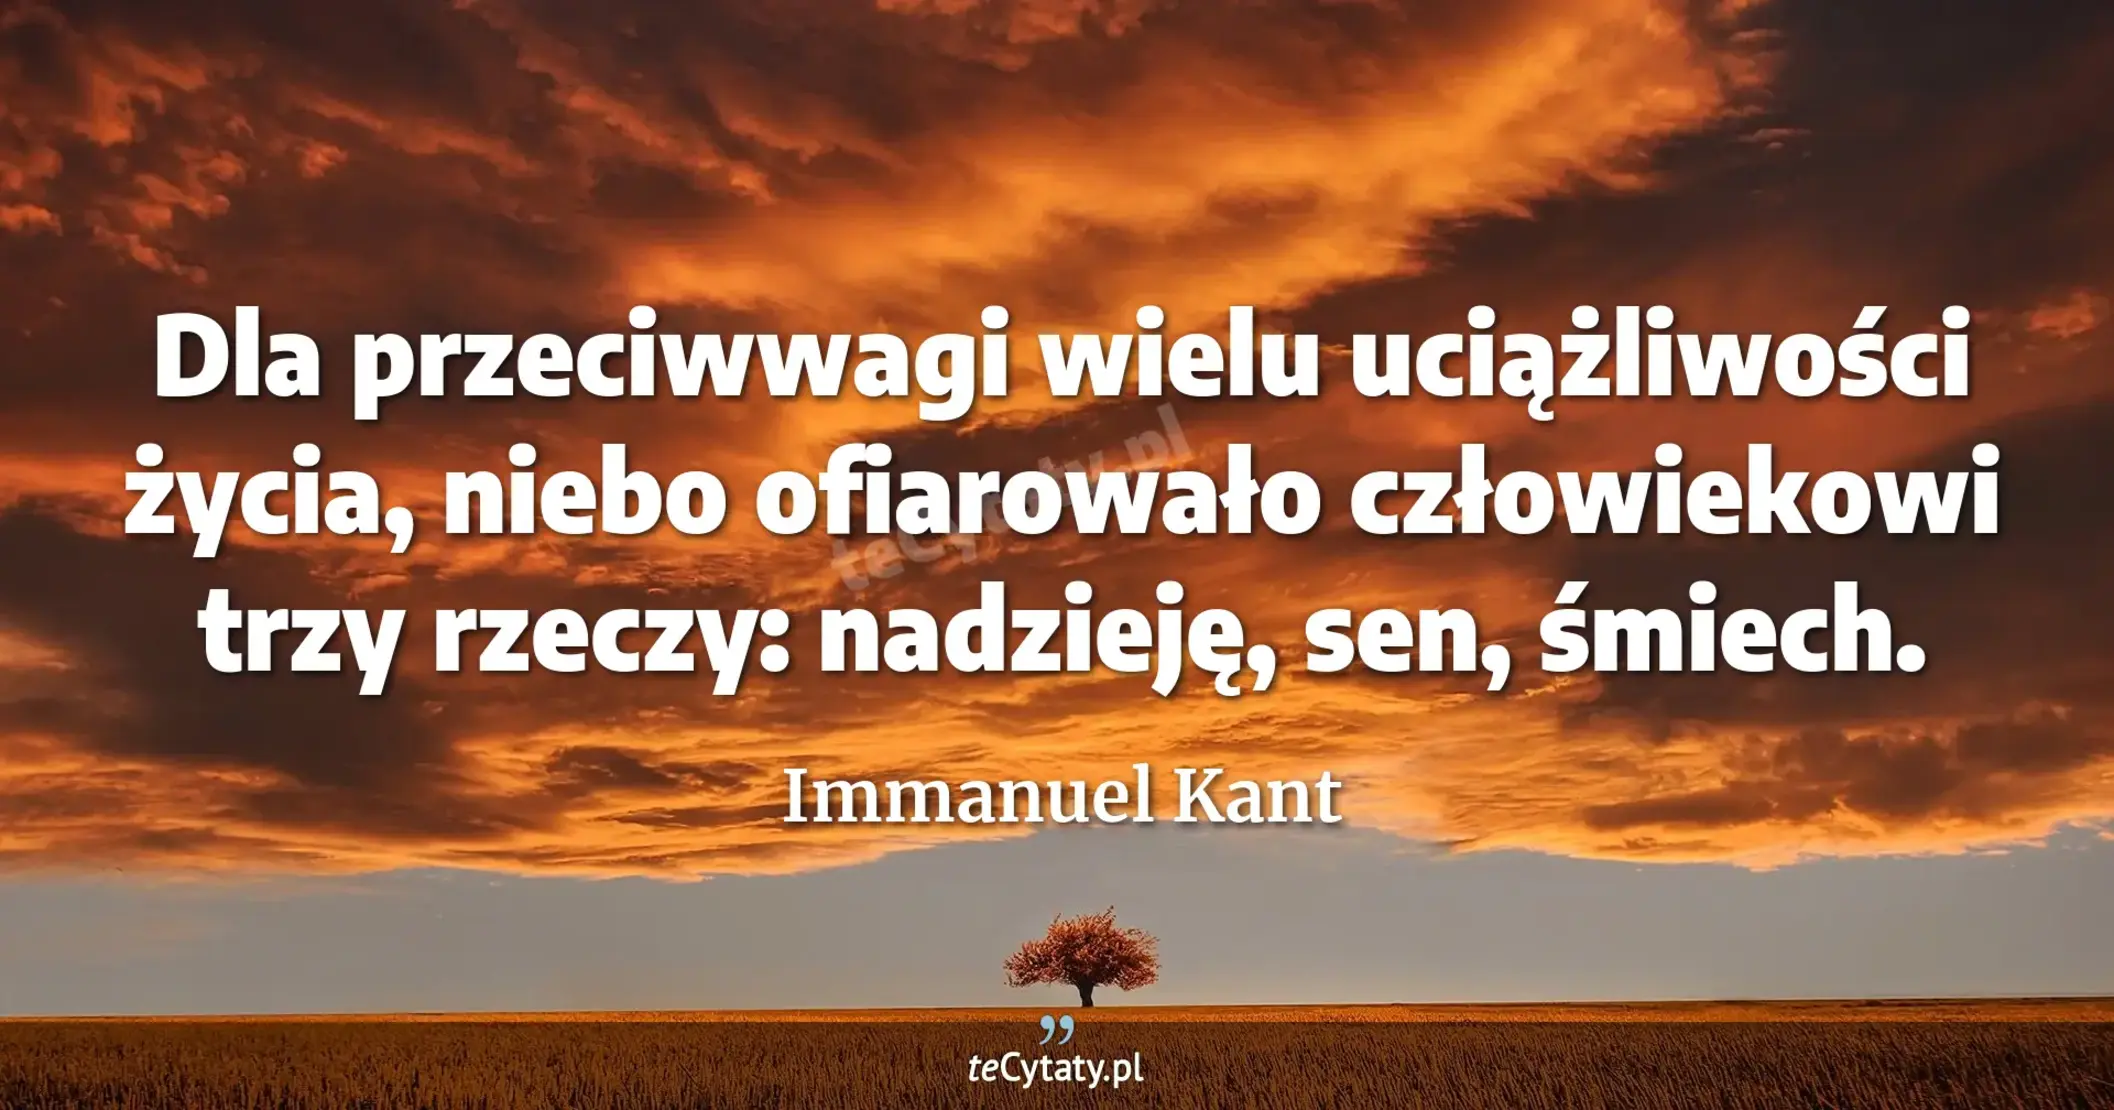 Dla przeciwwagi wielu uciążliwości życia, niebo ofiarowało człowiekowi trzy rzeczy: nadzieję, sen, śmiech. - Immanuel Kant